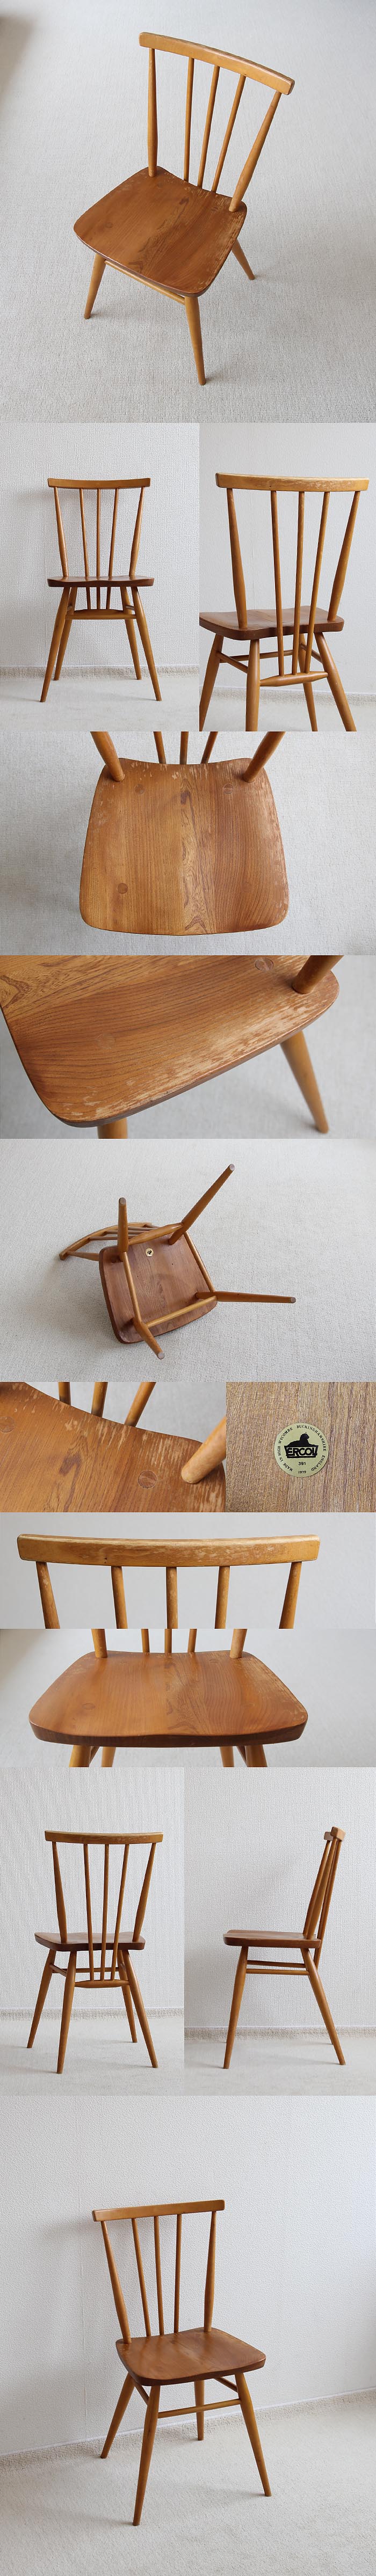 イギリス アンティーク アーコール スティックバックチェア 木製 椅子「ERCOL」V-359